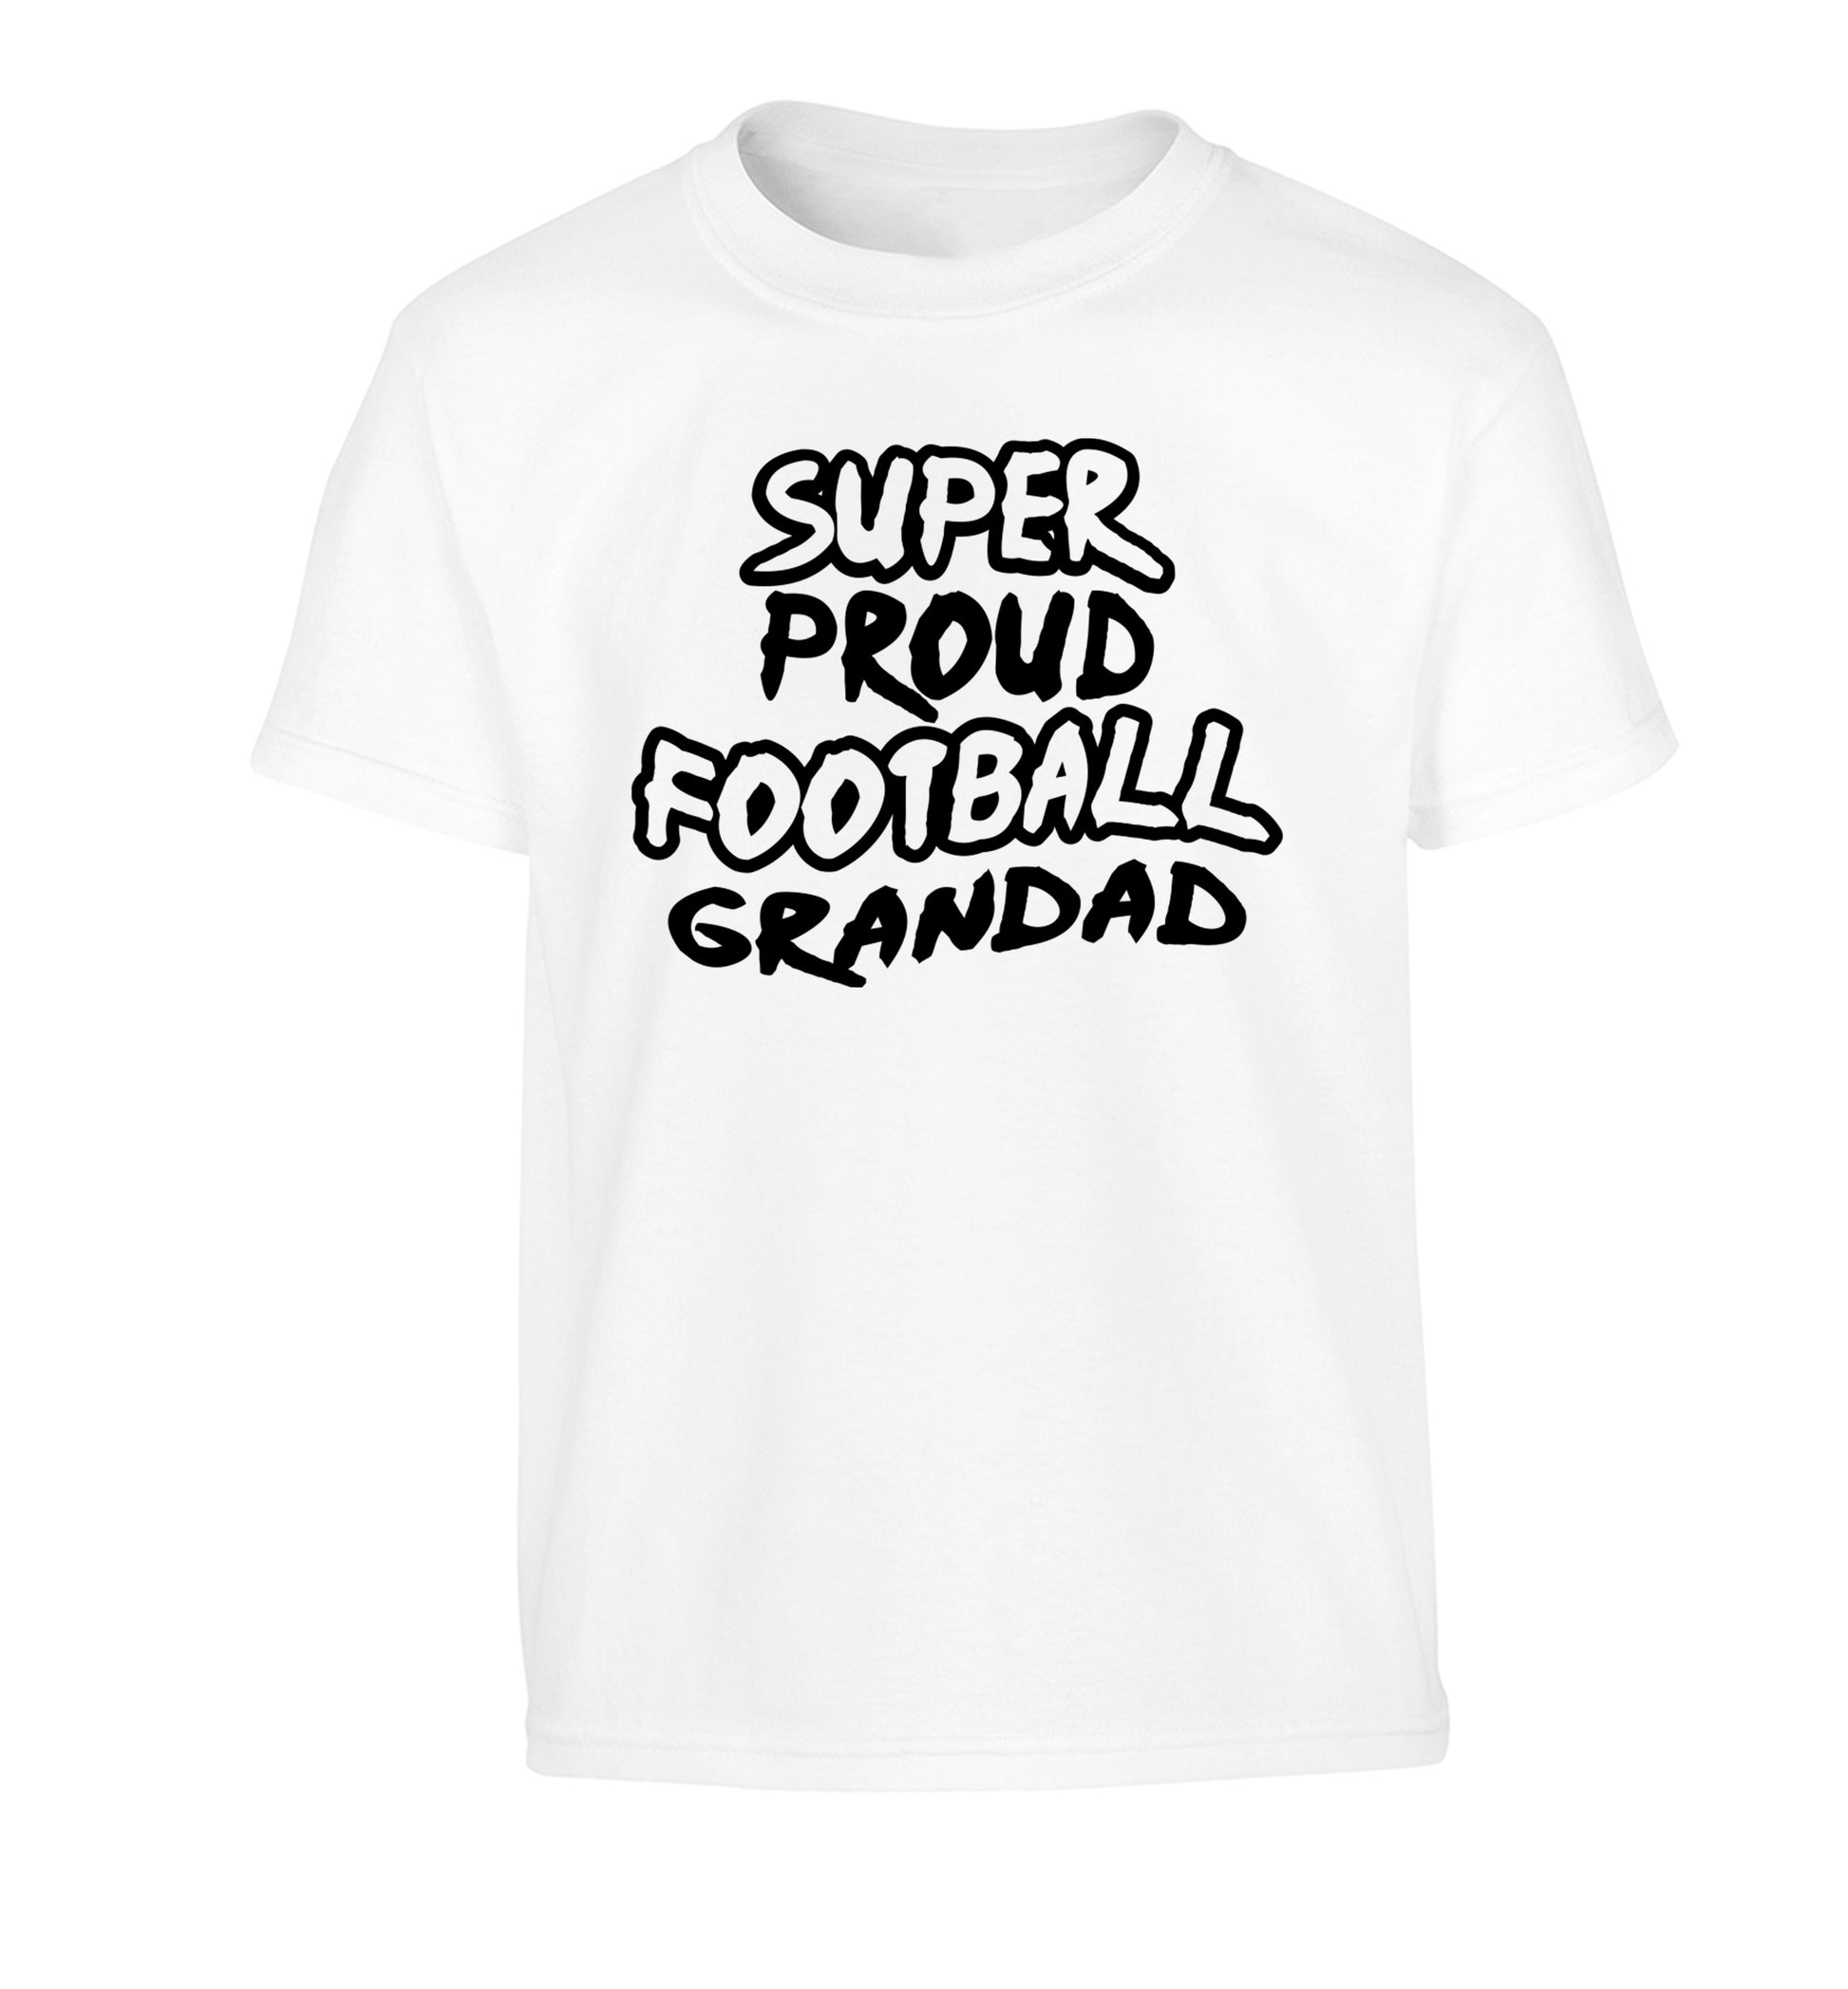 Super proud football grandad Children's white Tshirt 12-14 Years